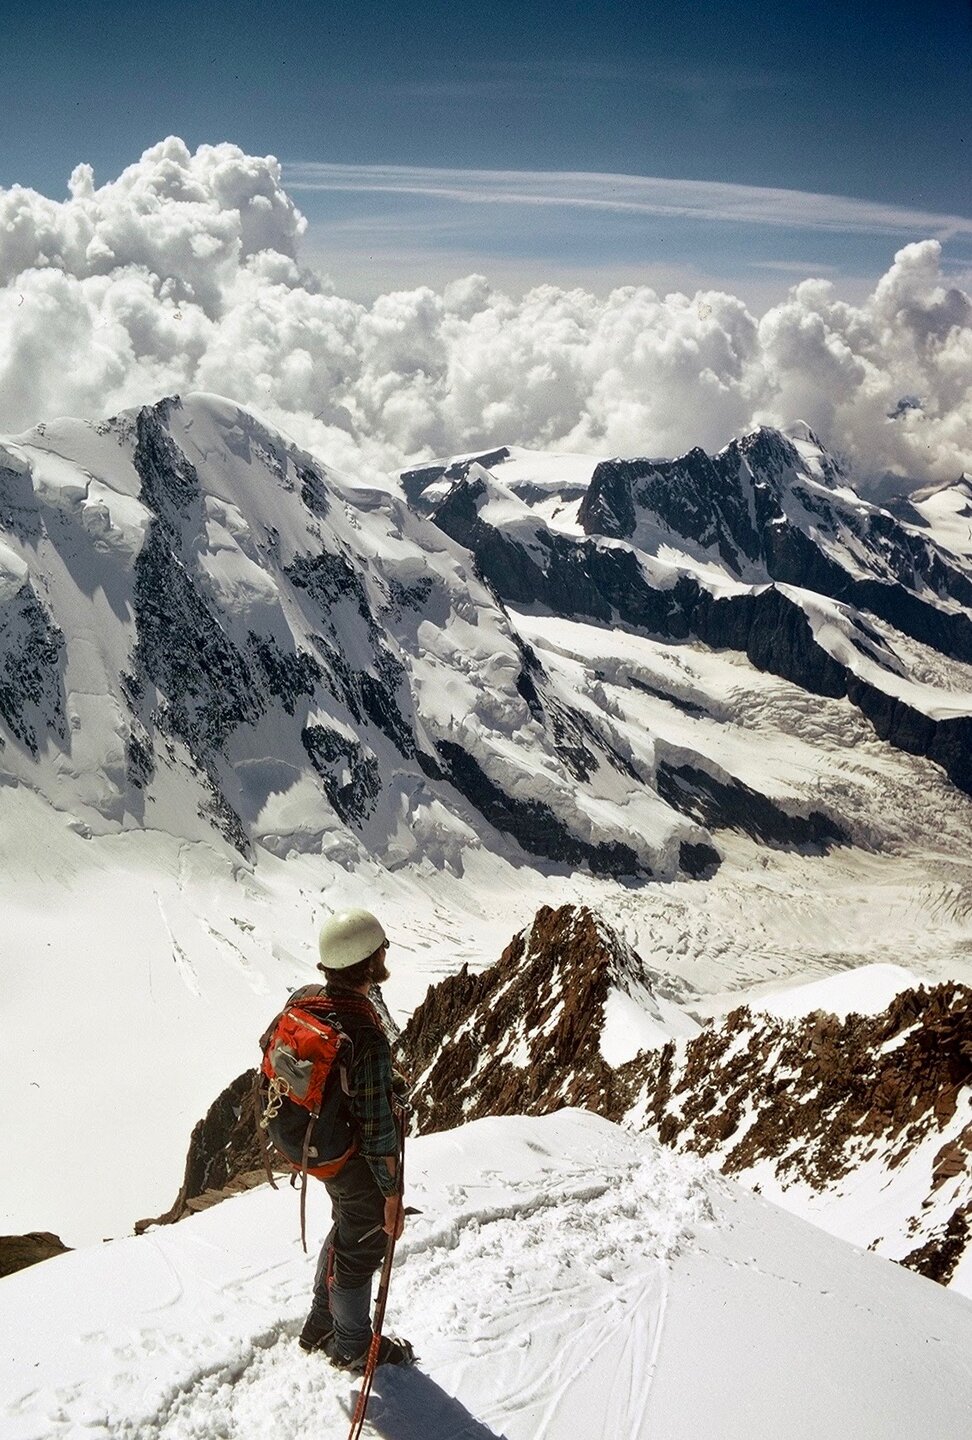 UKC Photos - Top 10 Climbing & Mountaineering Photos this week